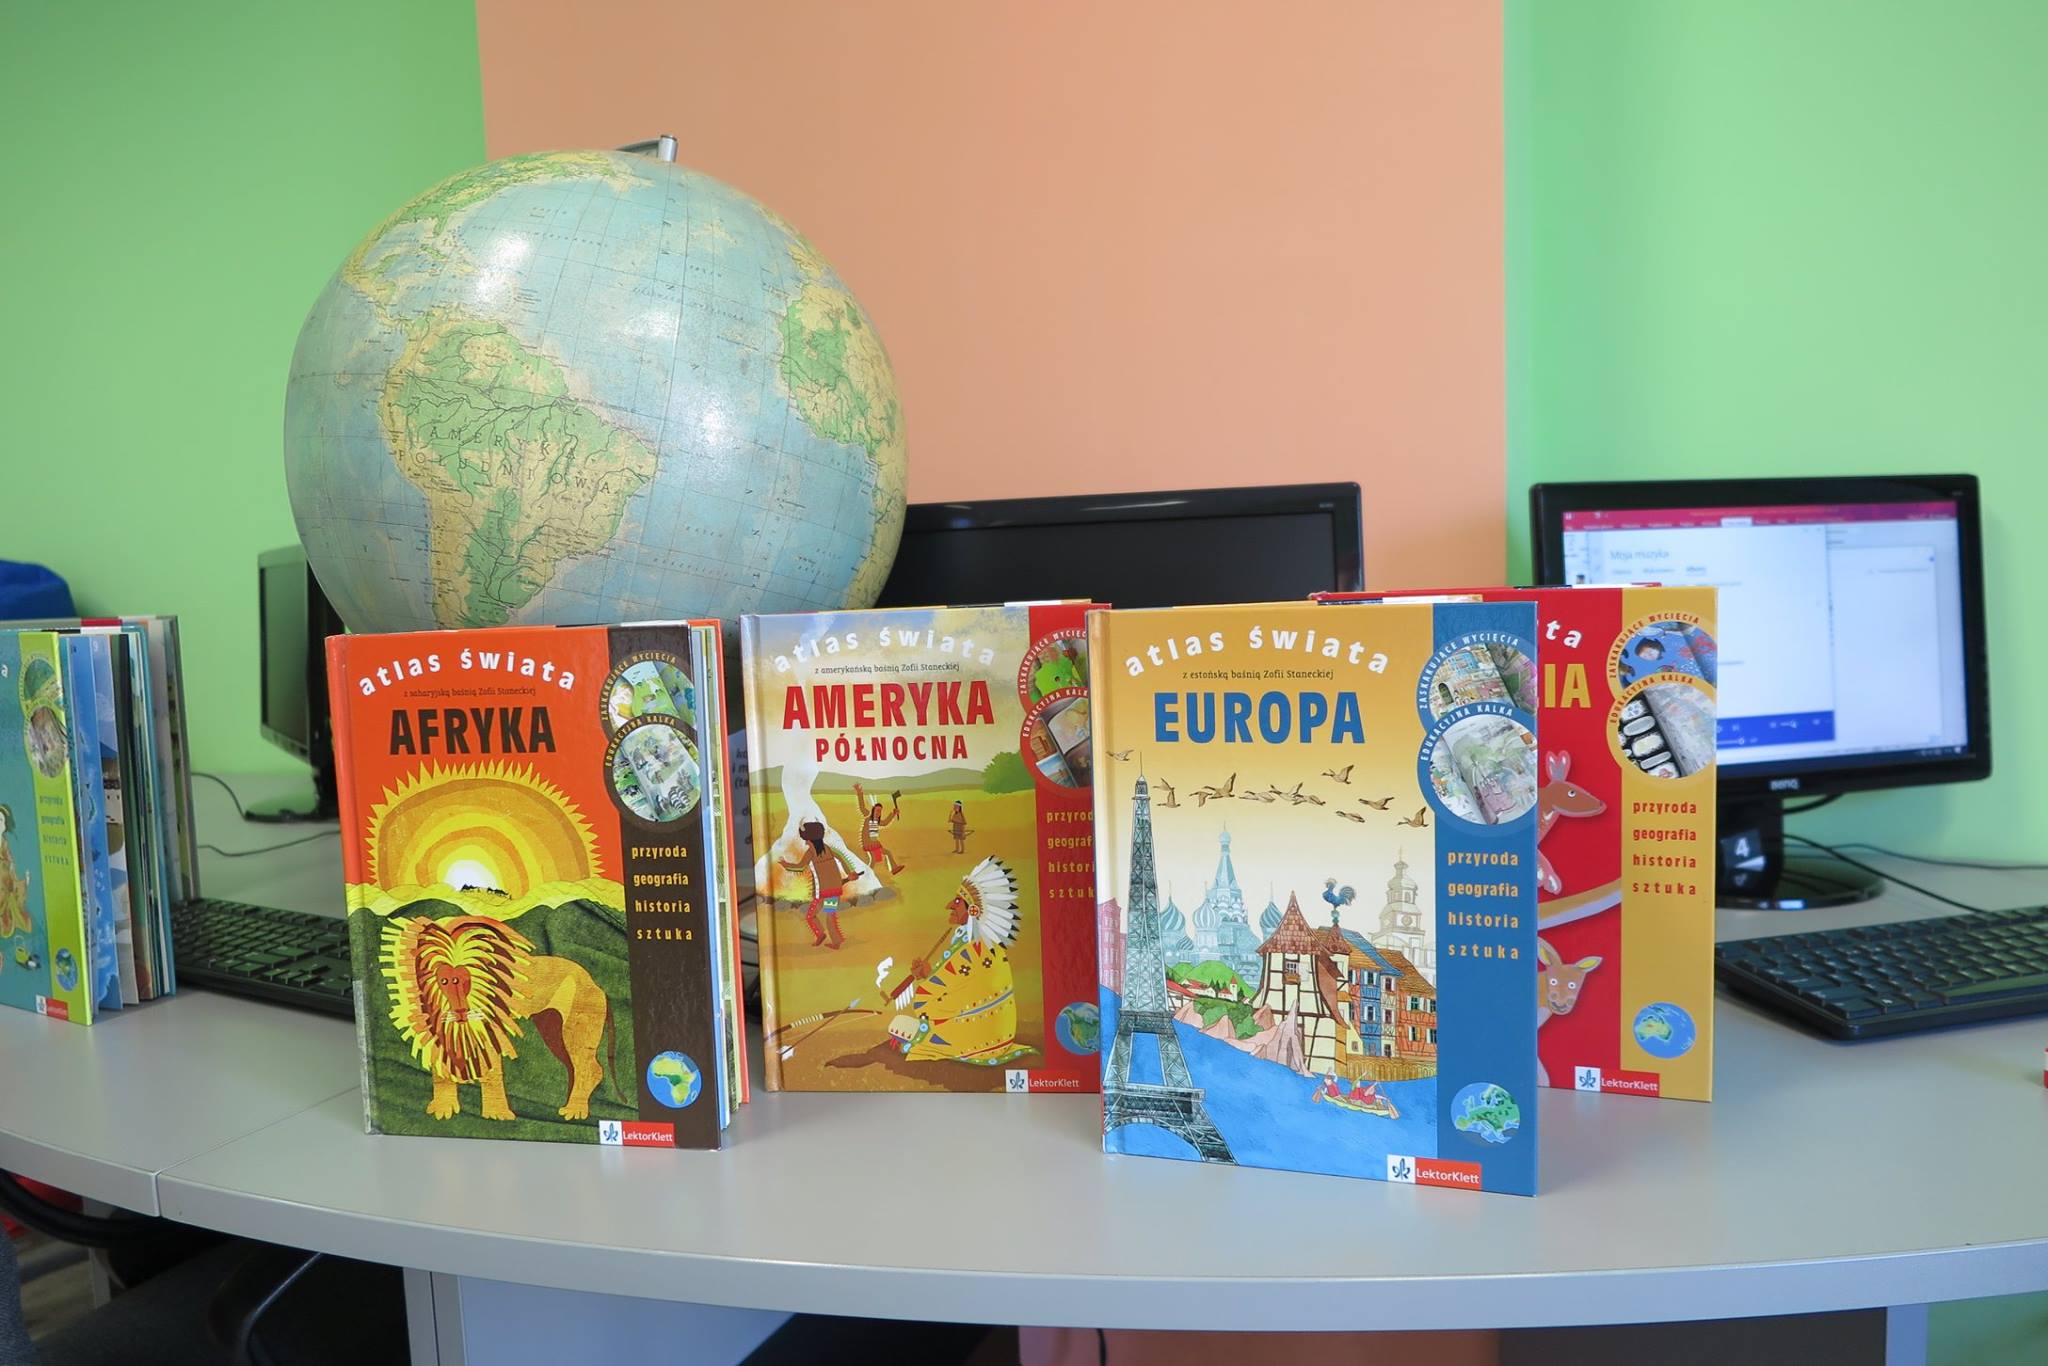 Na stoliku komputery, globus i pięć atlasów świata z kontynentów takich jak Afryka, Ameryka Północna, Europa.